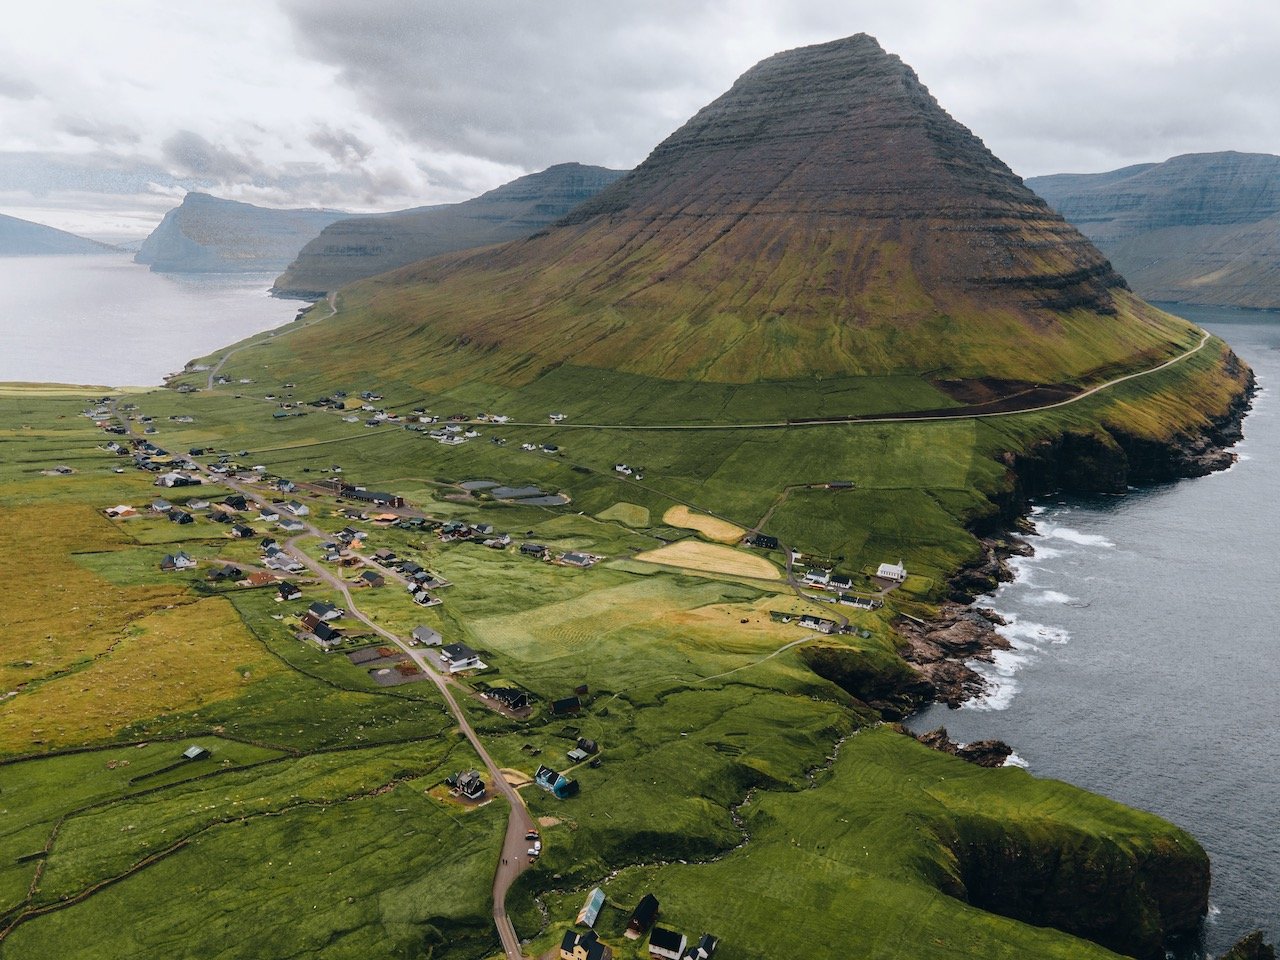   Malinsfjall, Vidoy, Faroe Islands (ISO 100, 4.5 mm,  f /2.8, 1/30 s)  